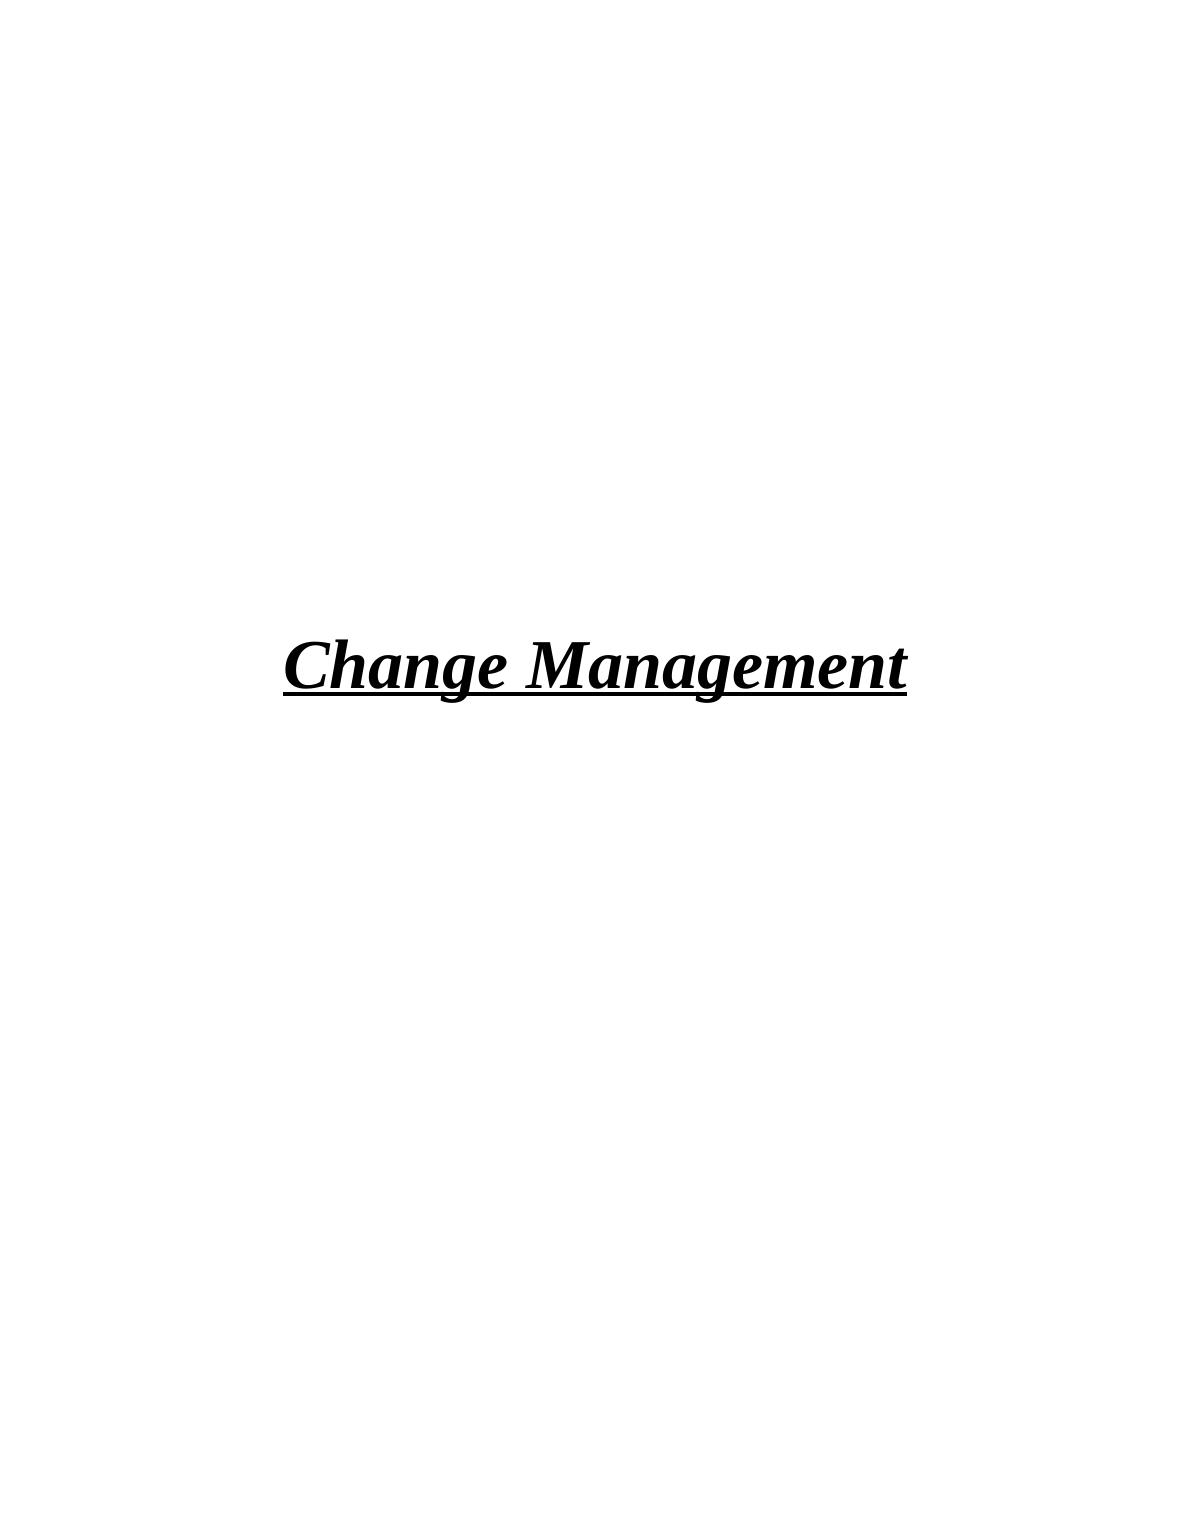 Presentation on Change Management_1